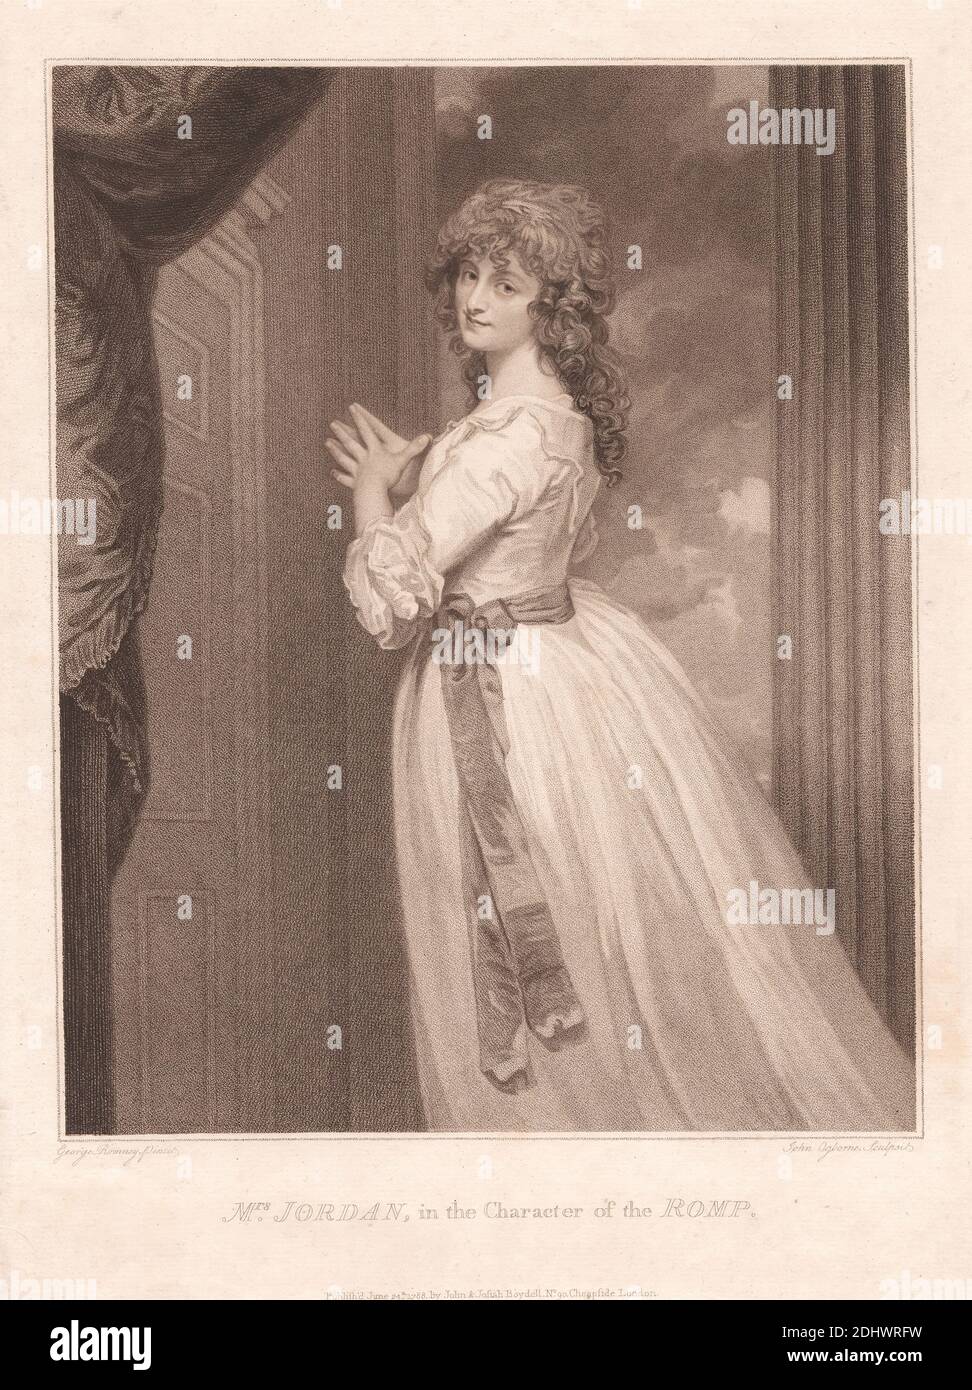 La signora Jordan nel personaggio del Romp, Stampa fatta da John Ogborne il Vecchio, 1755–1795, inglese, dopo George Romney, 1734–1802, inglese, 1788, incisione con impresso (primo stato) su carta deformata, leggermente testurizzata, leggermente spessa, foglio: 14 7/8 × 11 5/16 pollici (37.8 × 28.7 cm) e immagine: 12 1/16 × 9 5/8 pollici (30.6 × 24.4 cm Foto Stock